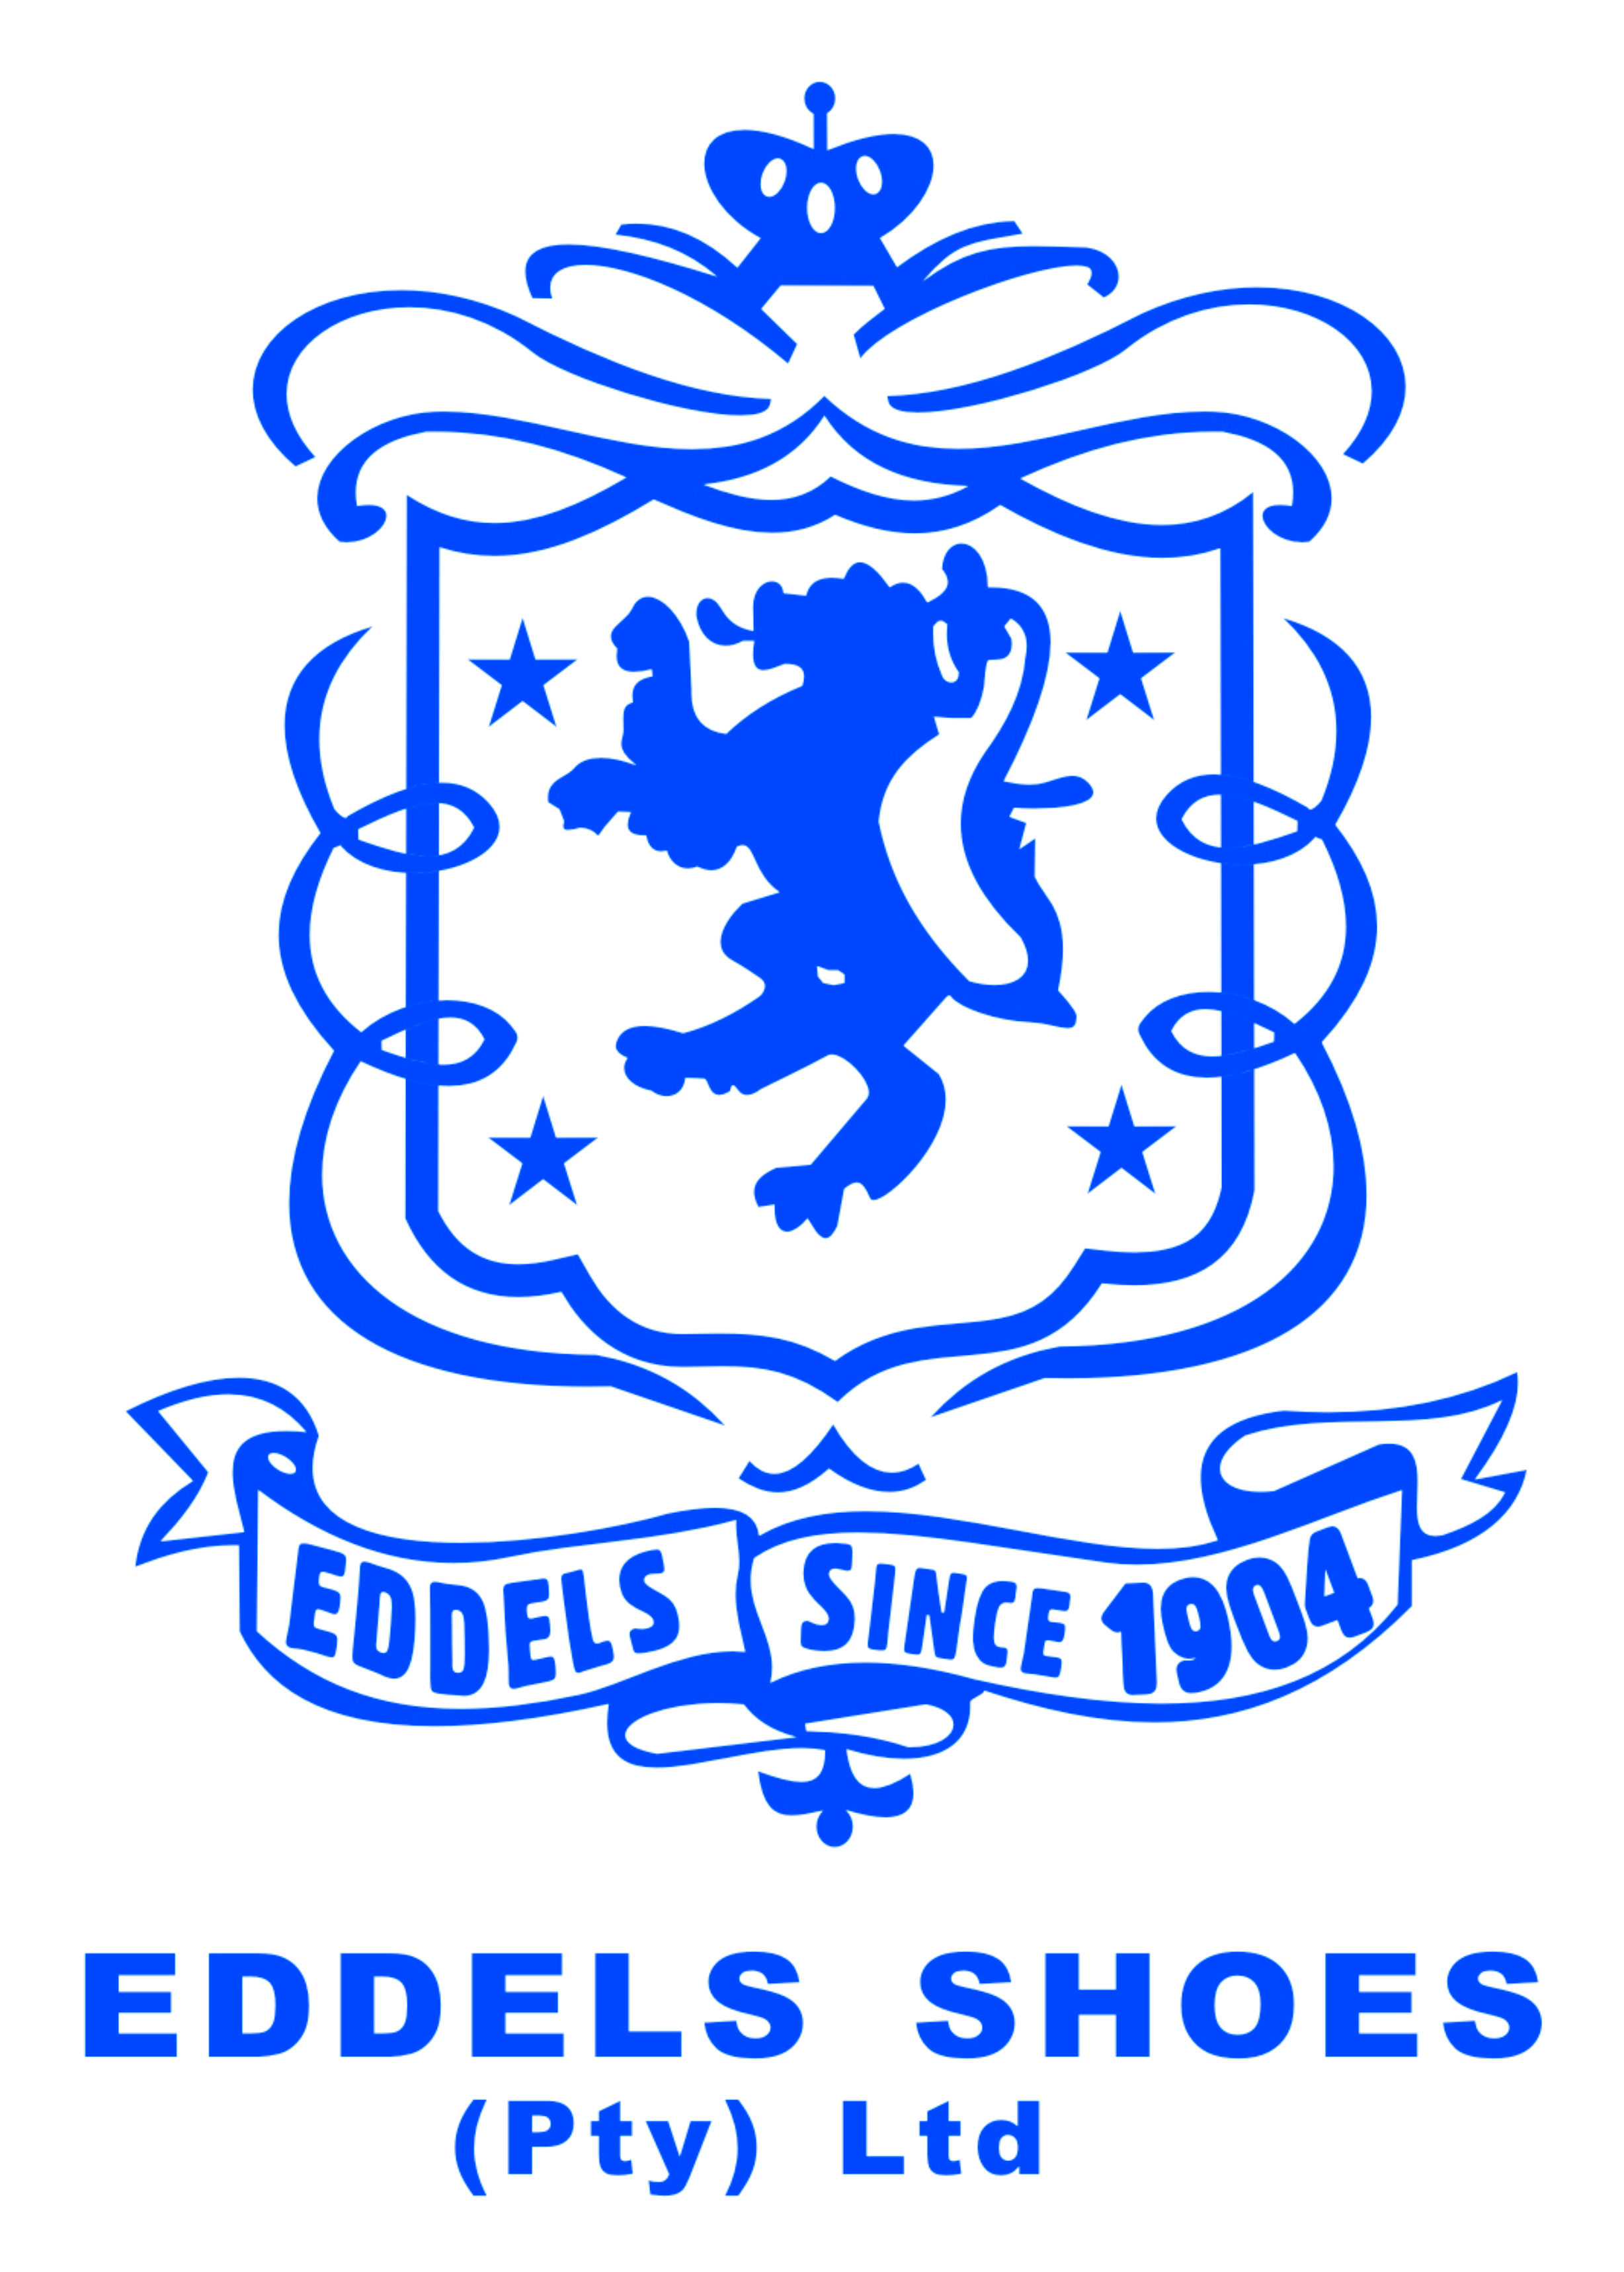 Eddels Shoes logo